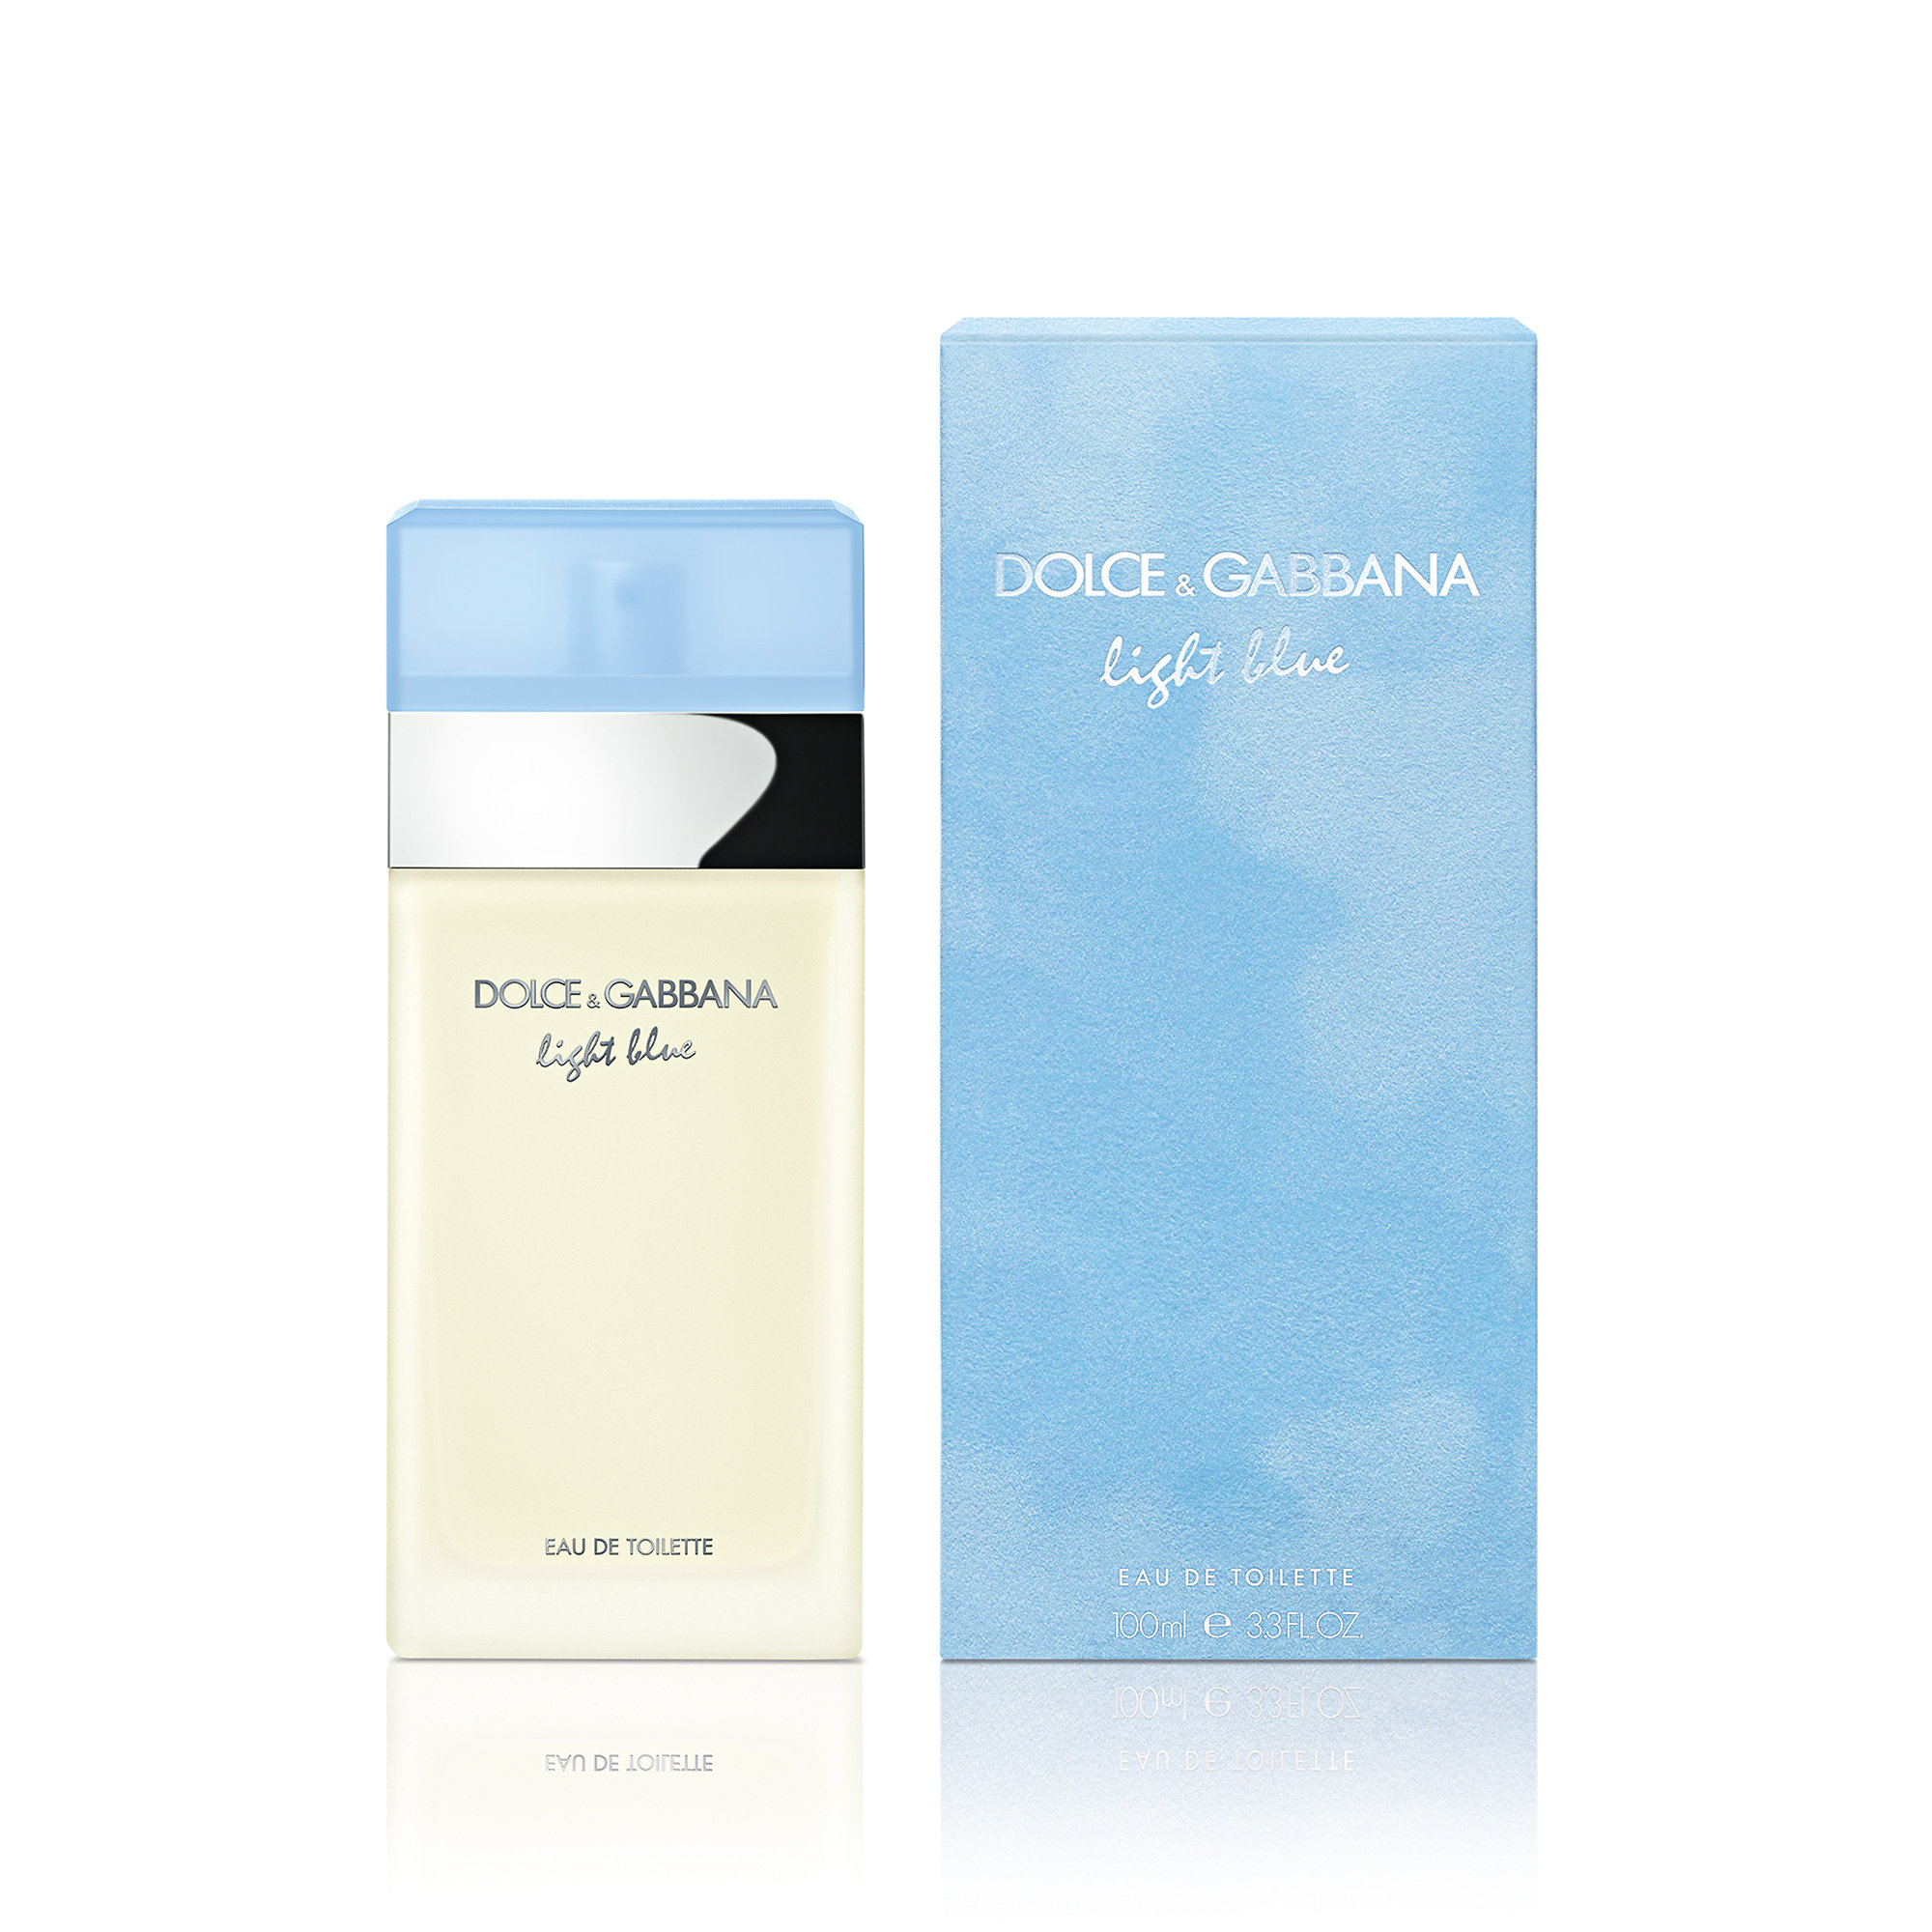 dolce & gabbana light blue parfum